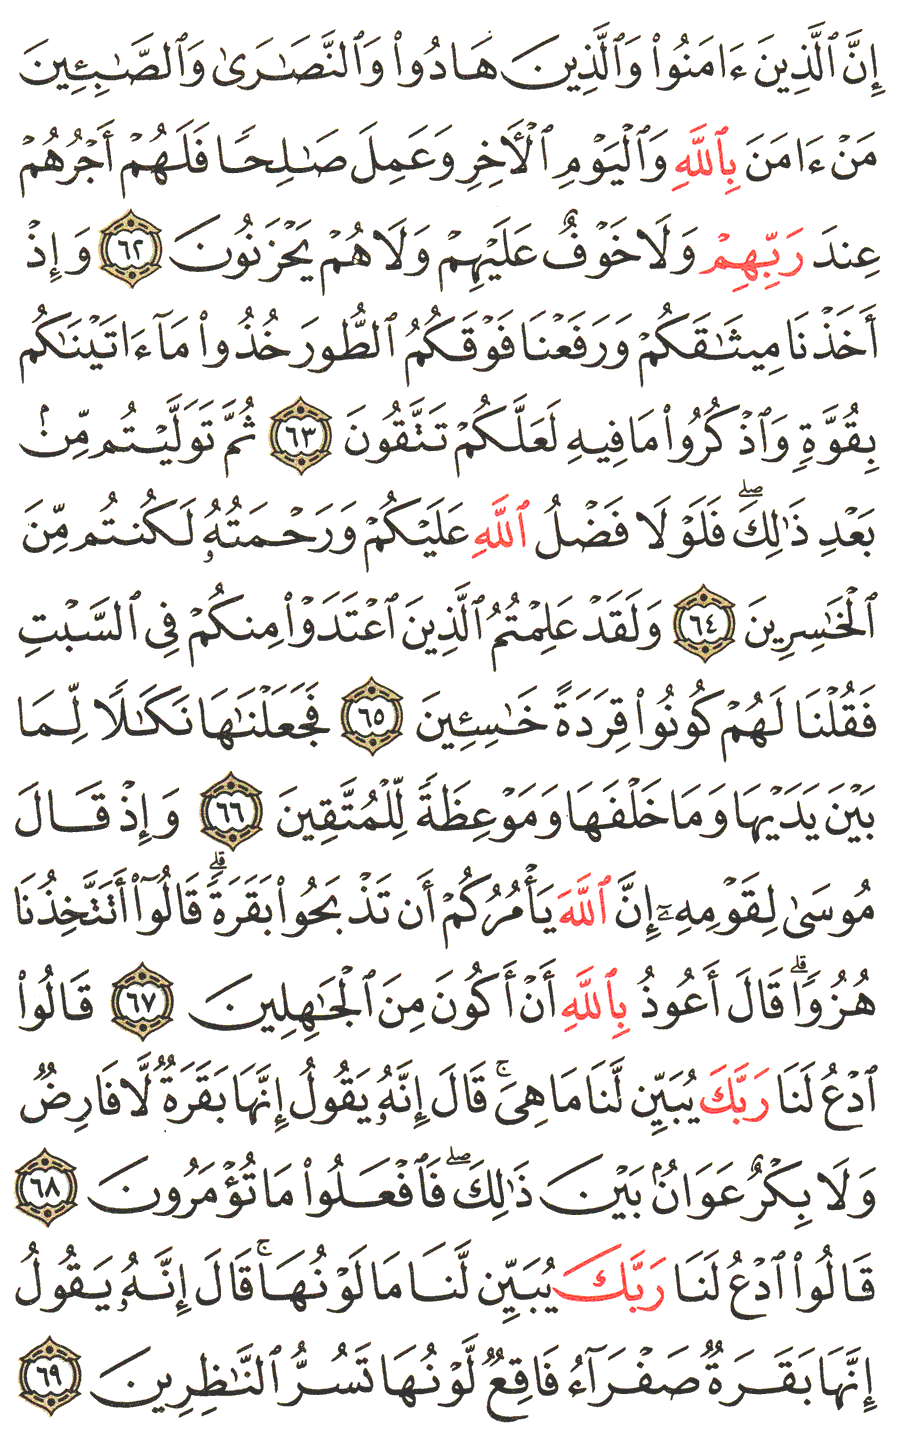 الصفحة 10 من القرآن الكريم